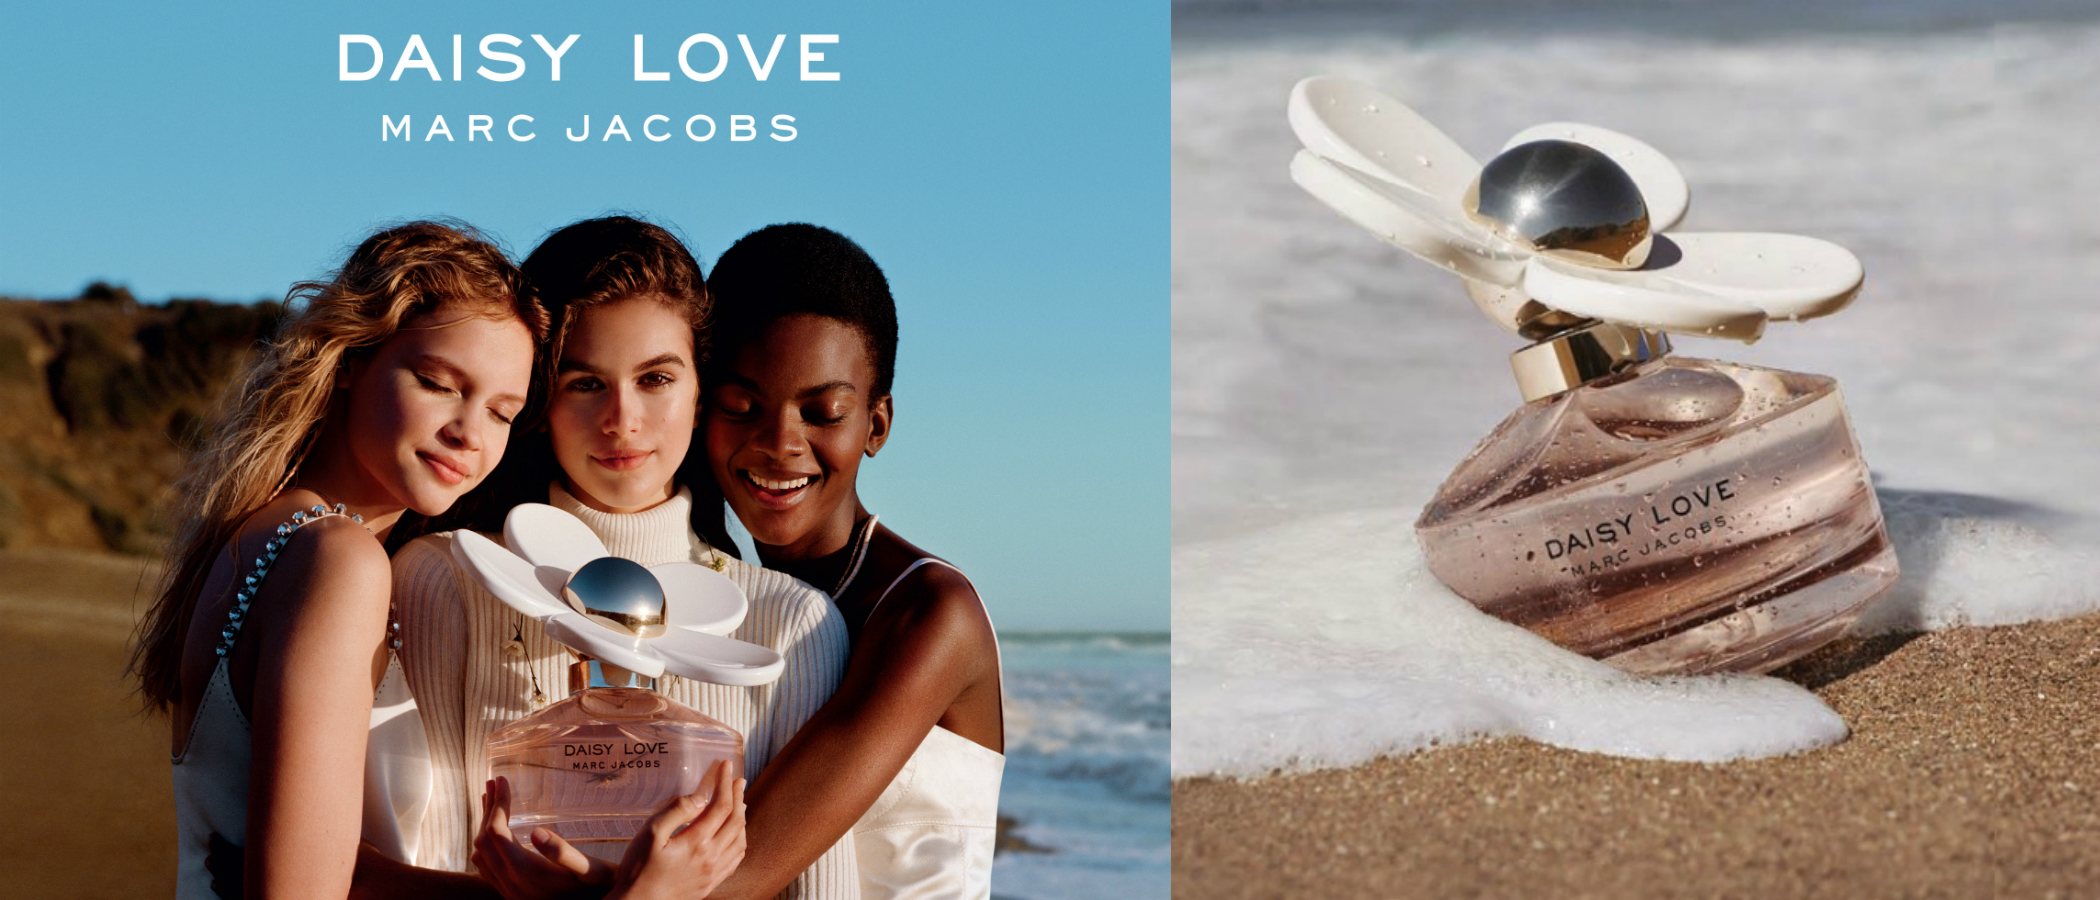 'Daisy Love', la nueva fragancia femenina de Marc Jacobs